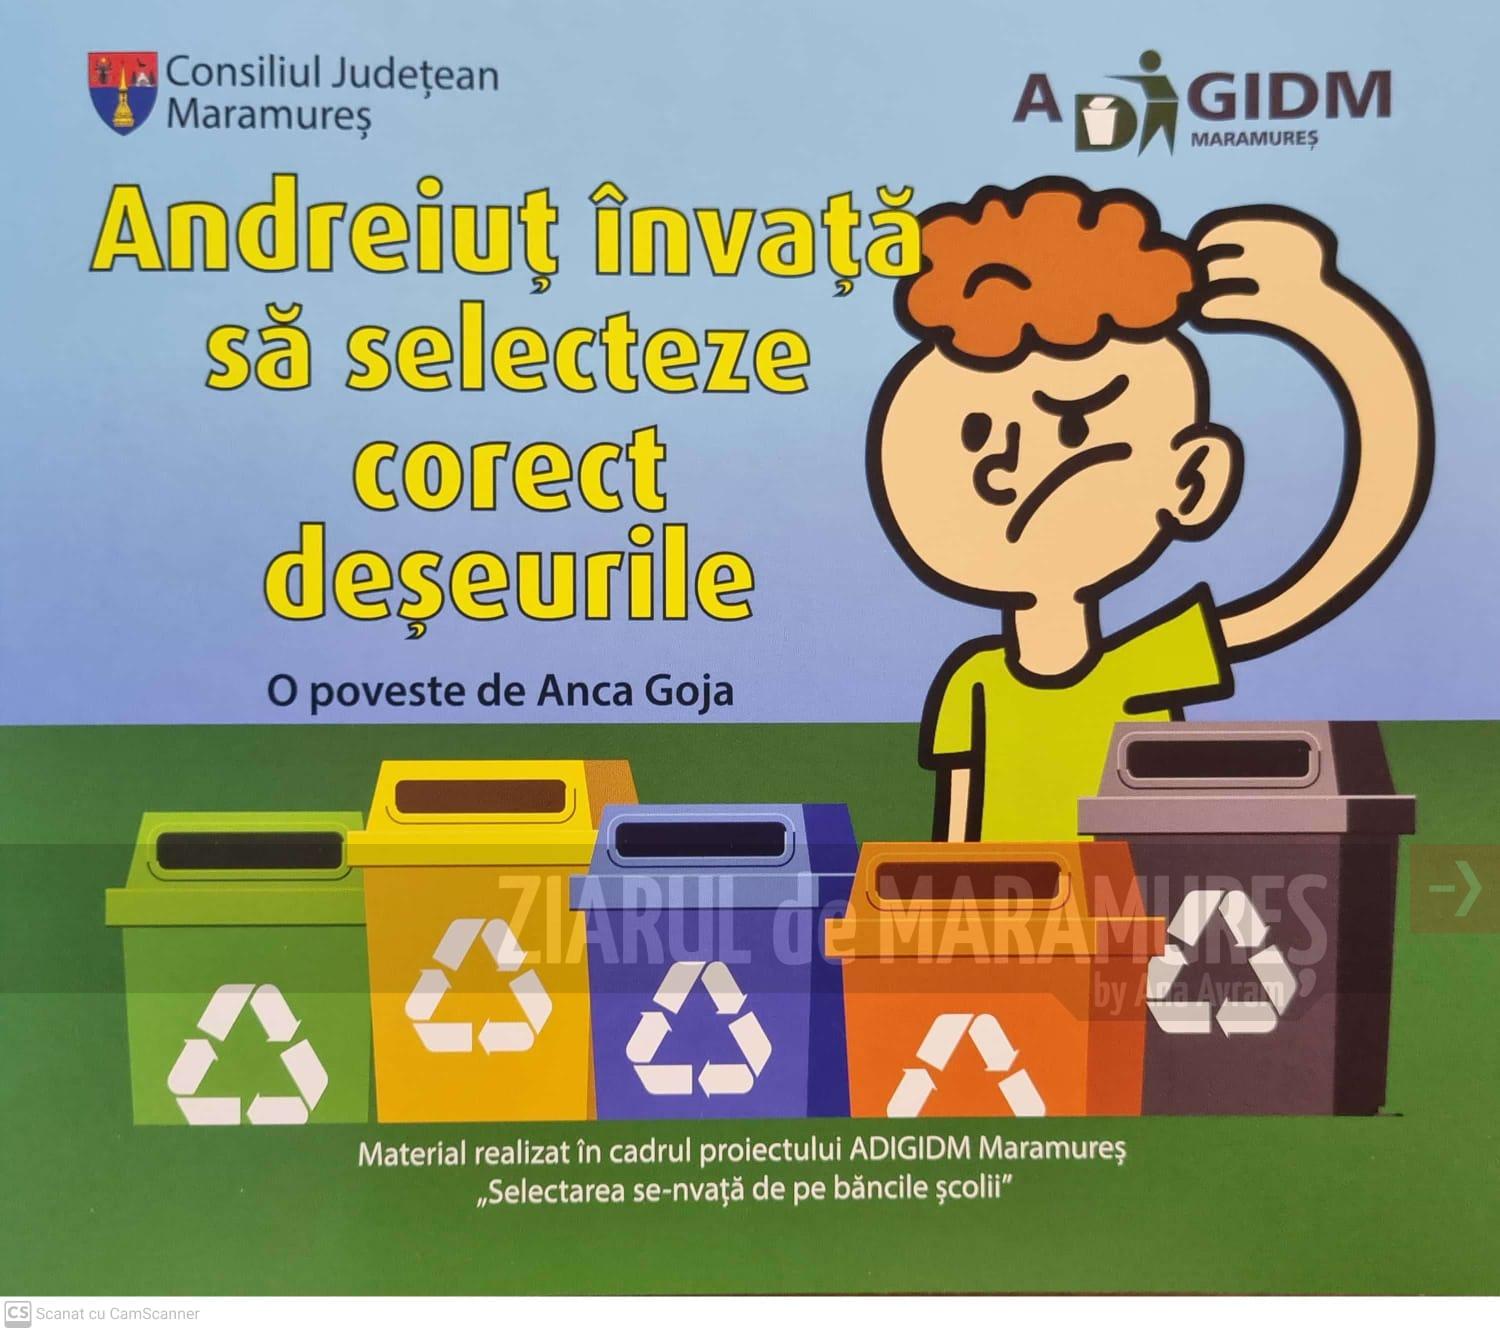 (FOTO)”Andreiuț învață să selecteze corect deșeurile”, o carte creată pentru cei mici de ADI Deșeuri Maramureș